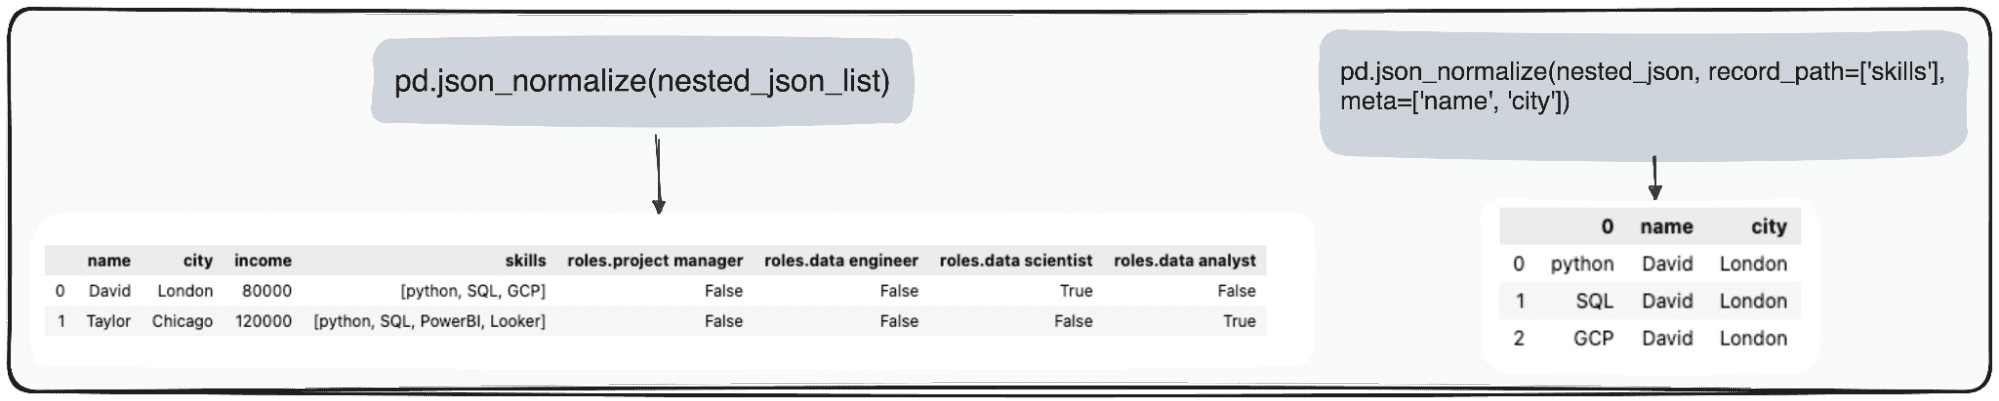 Μετατροπή JSON σε Pandas DataFrames: Ανάλυση τους με τον σωστό τρόπο